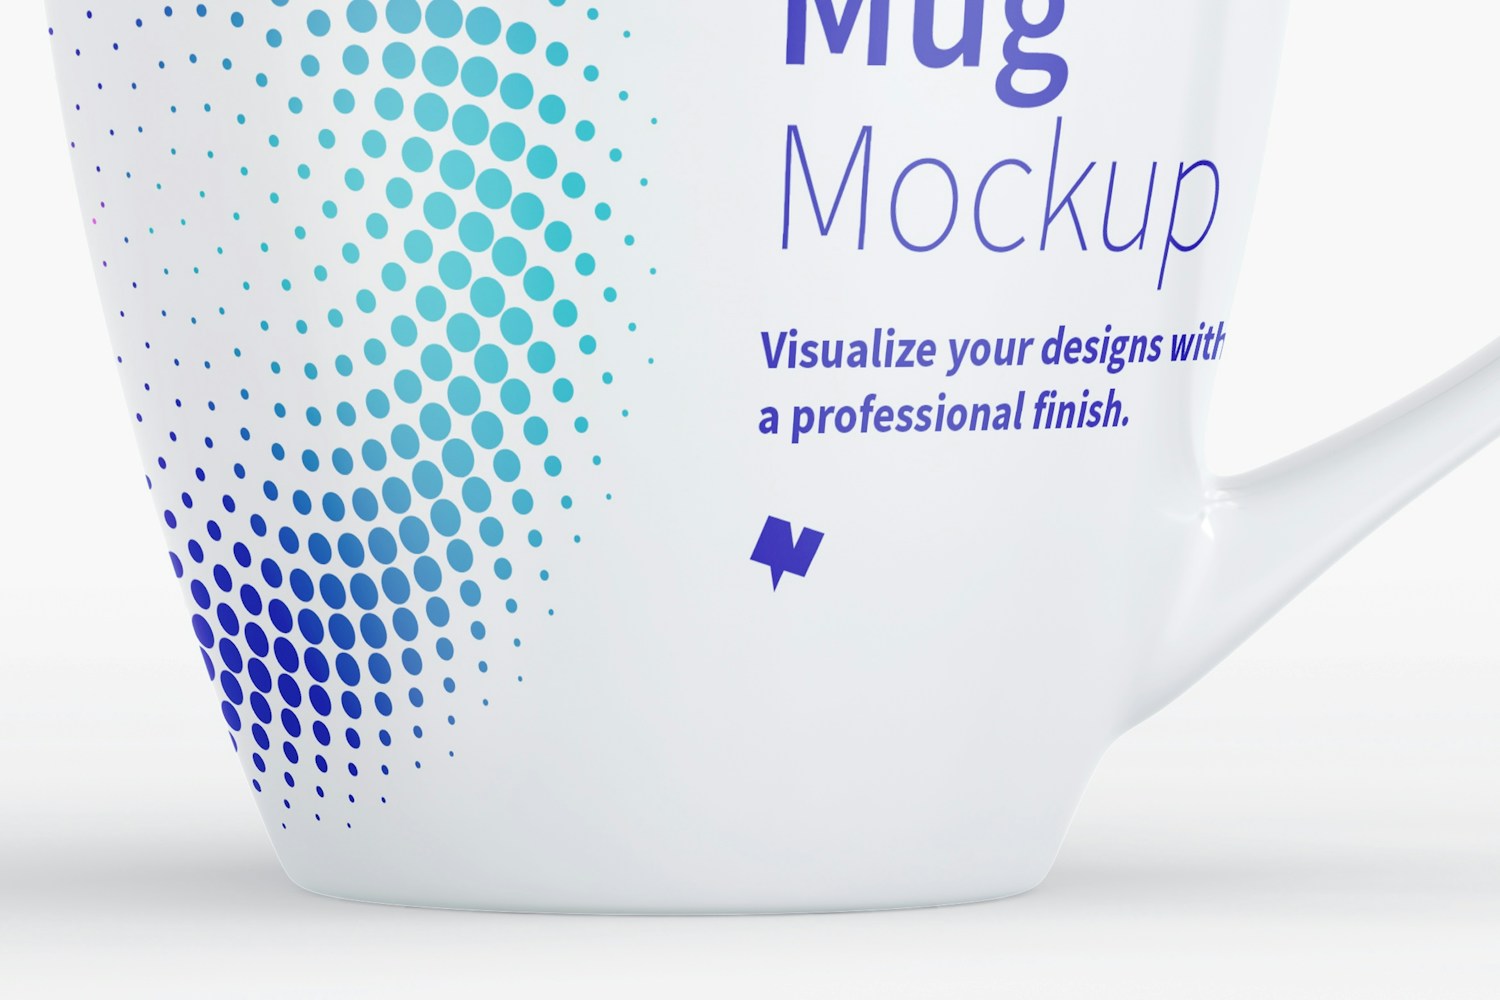 Mug Mockup 09